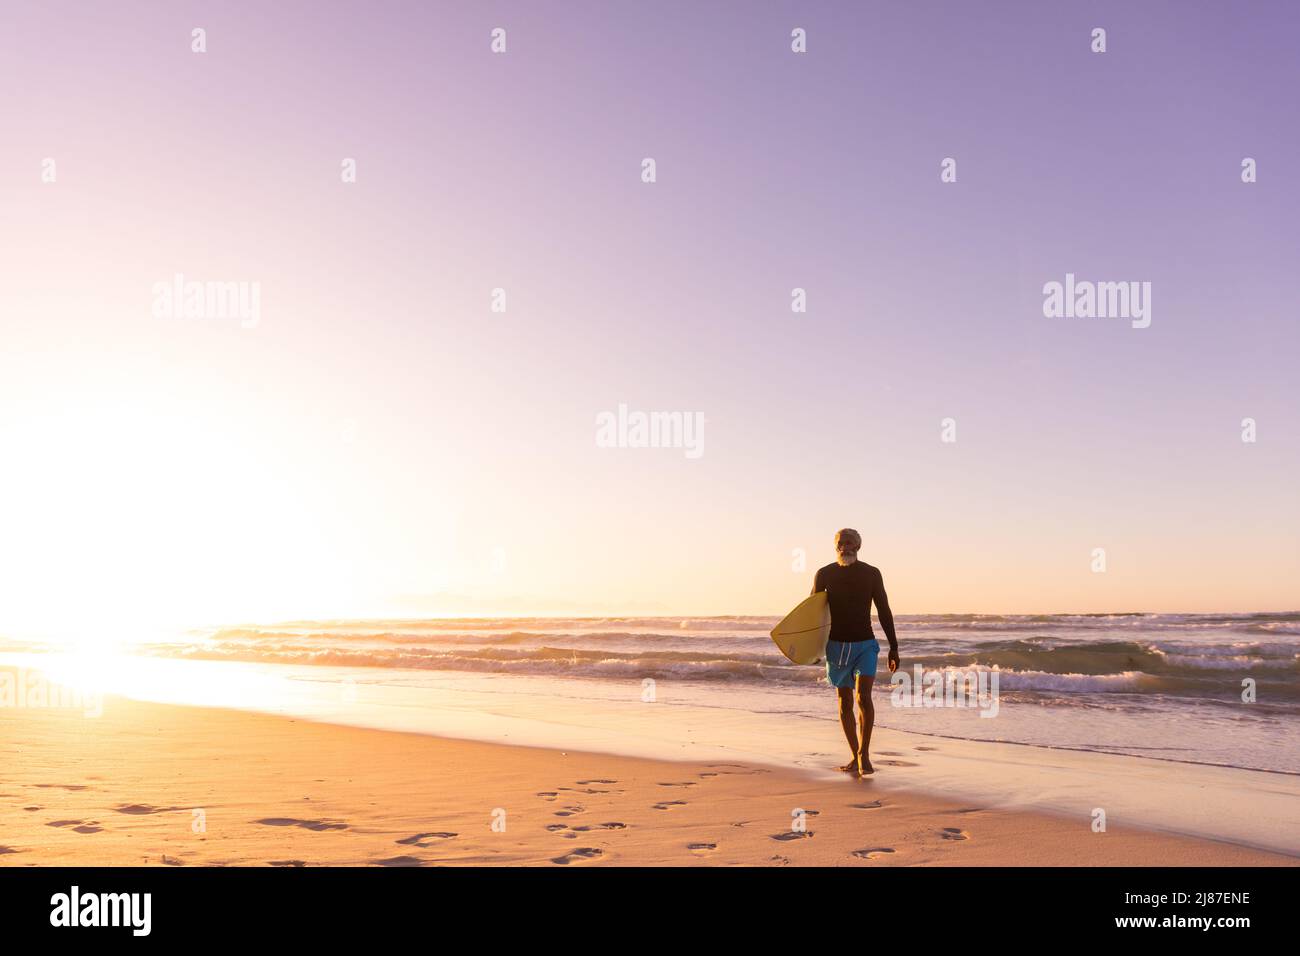 Homme senior afro-américain avec planche de surf marchant contre un paysage marin et ciel clair au coucher du soleil Banque D'Images